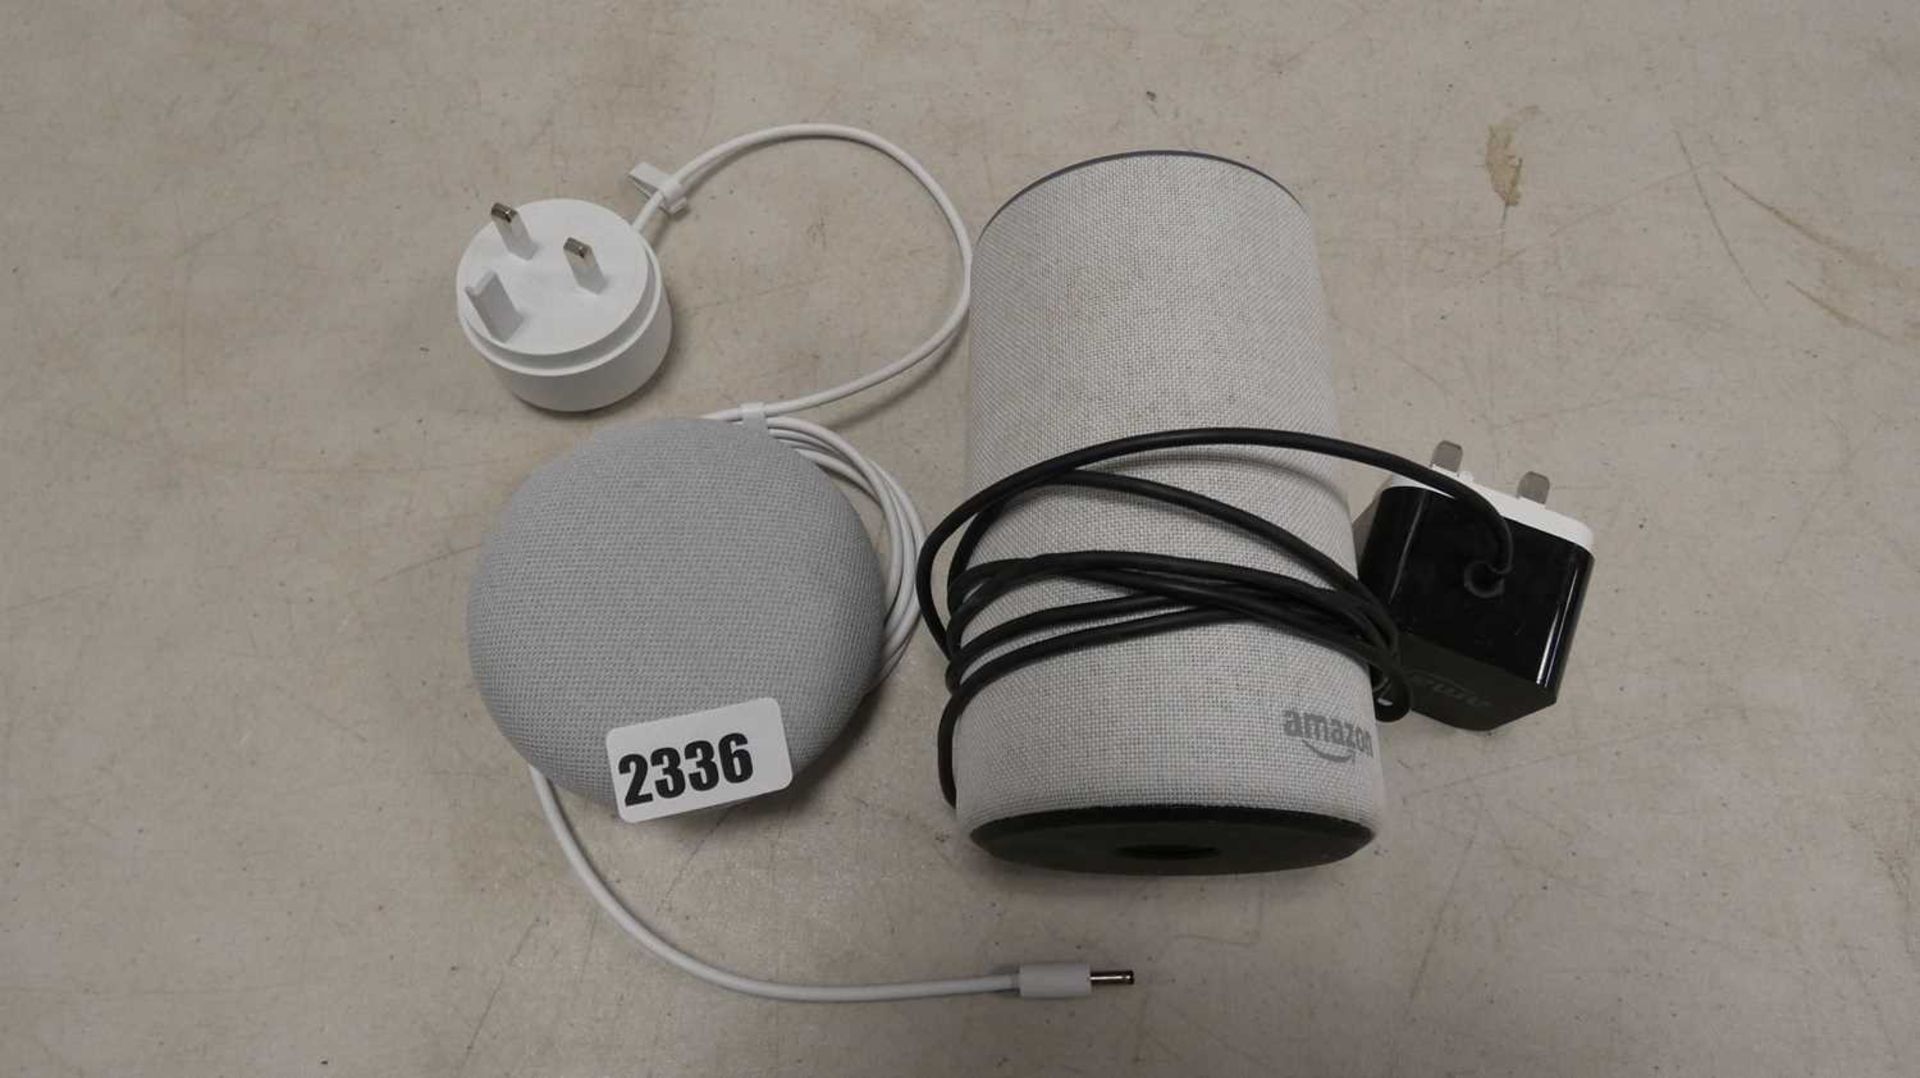 Google Mini 1st gen. smart speaker with Amazon Echo 2nd gen. wireless speaker and power adaptor